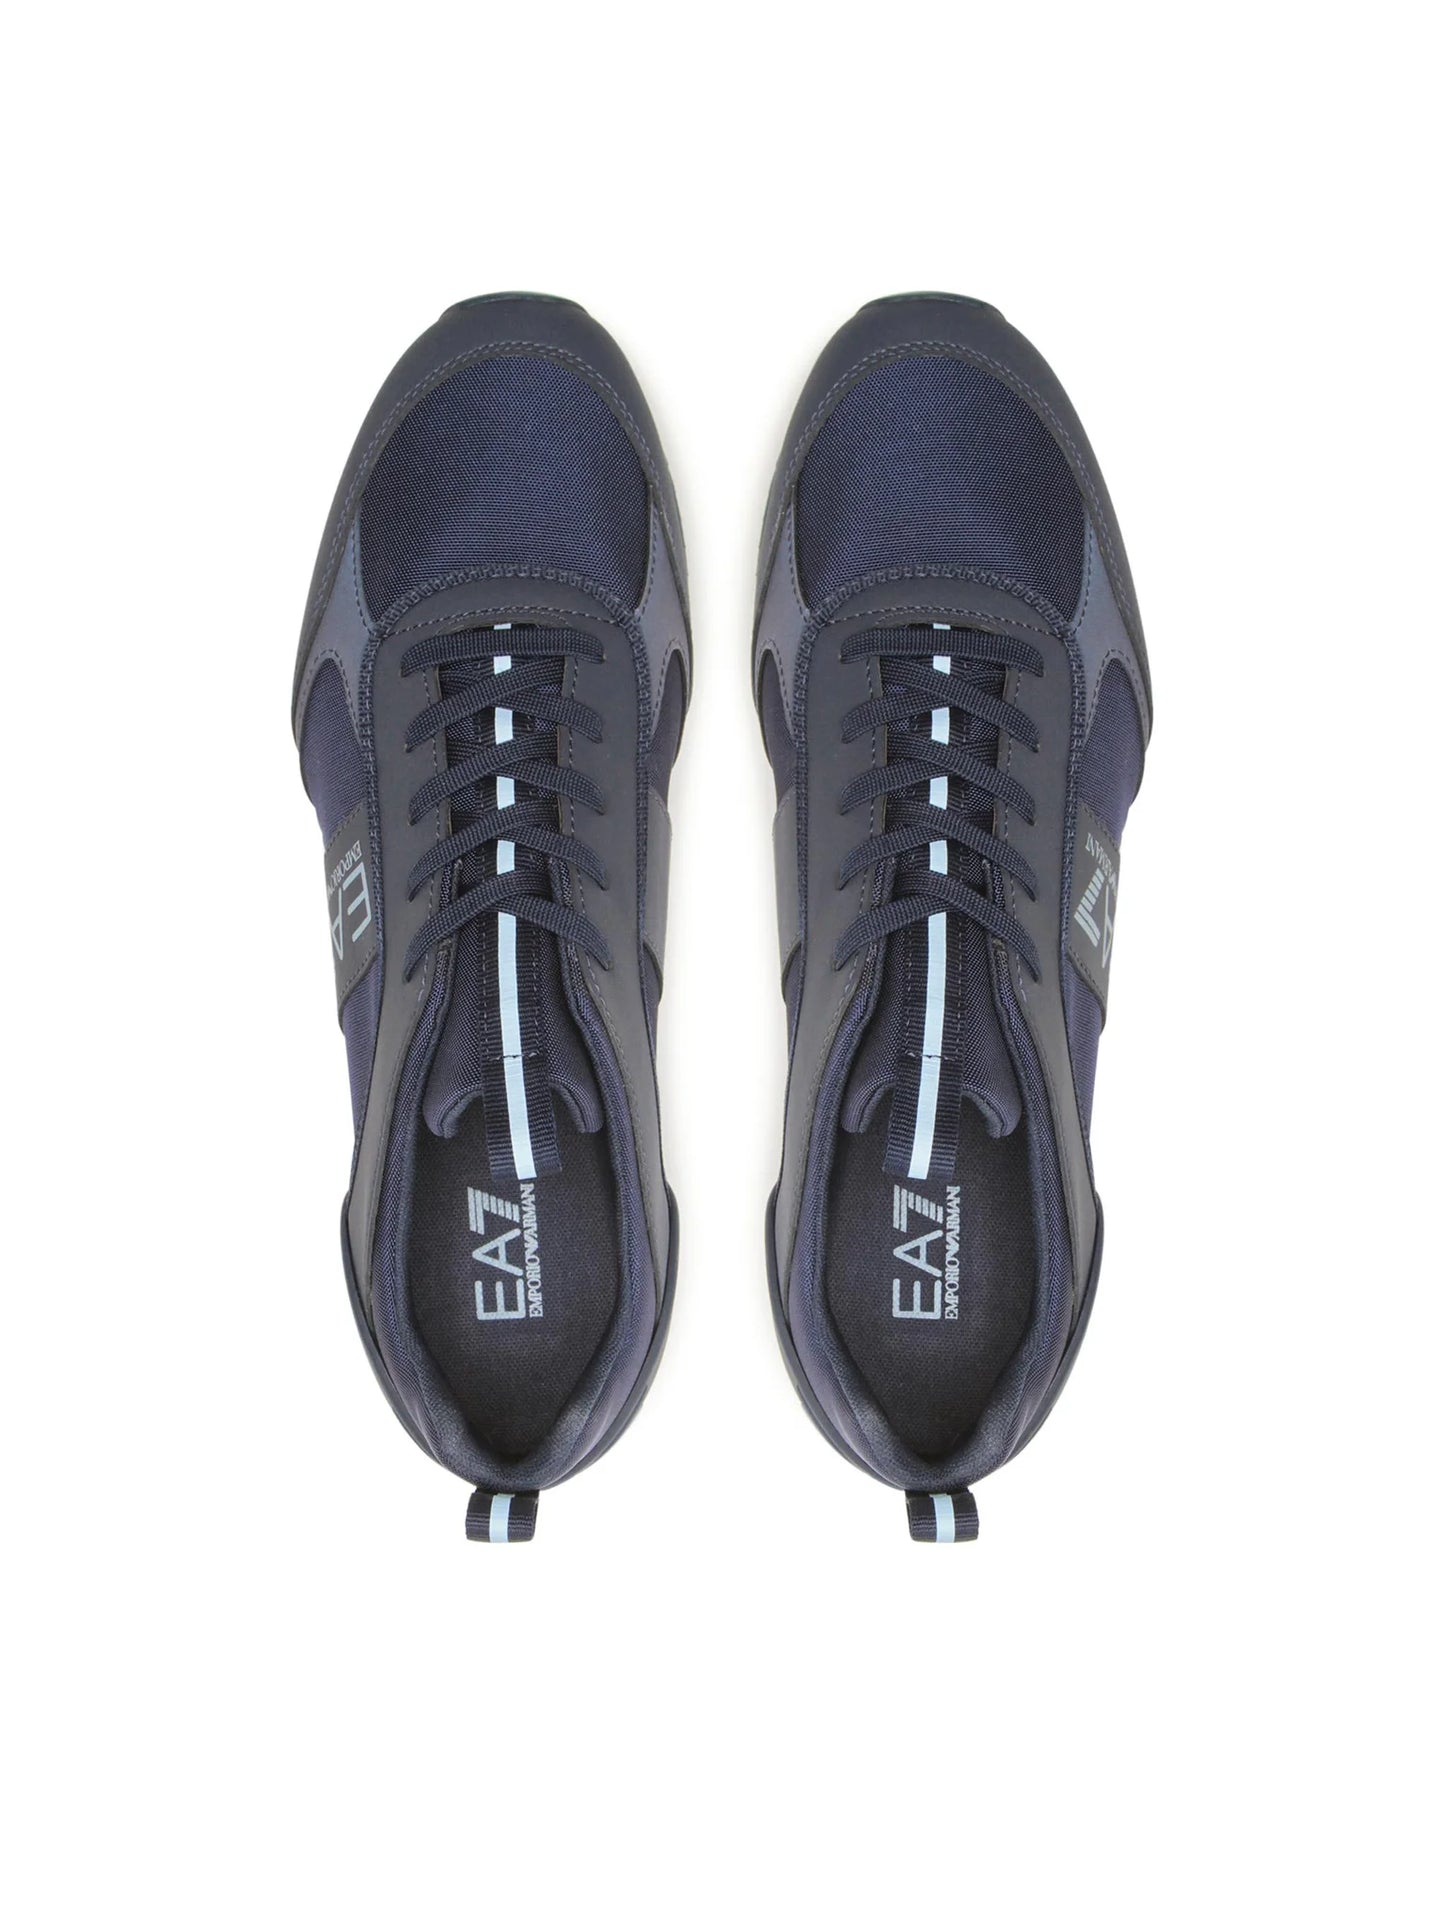 EA7 EMPORIO ARMANI Sneakers - Bleumarin